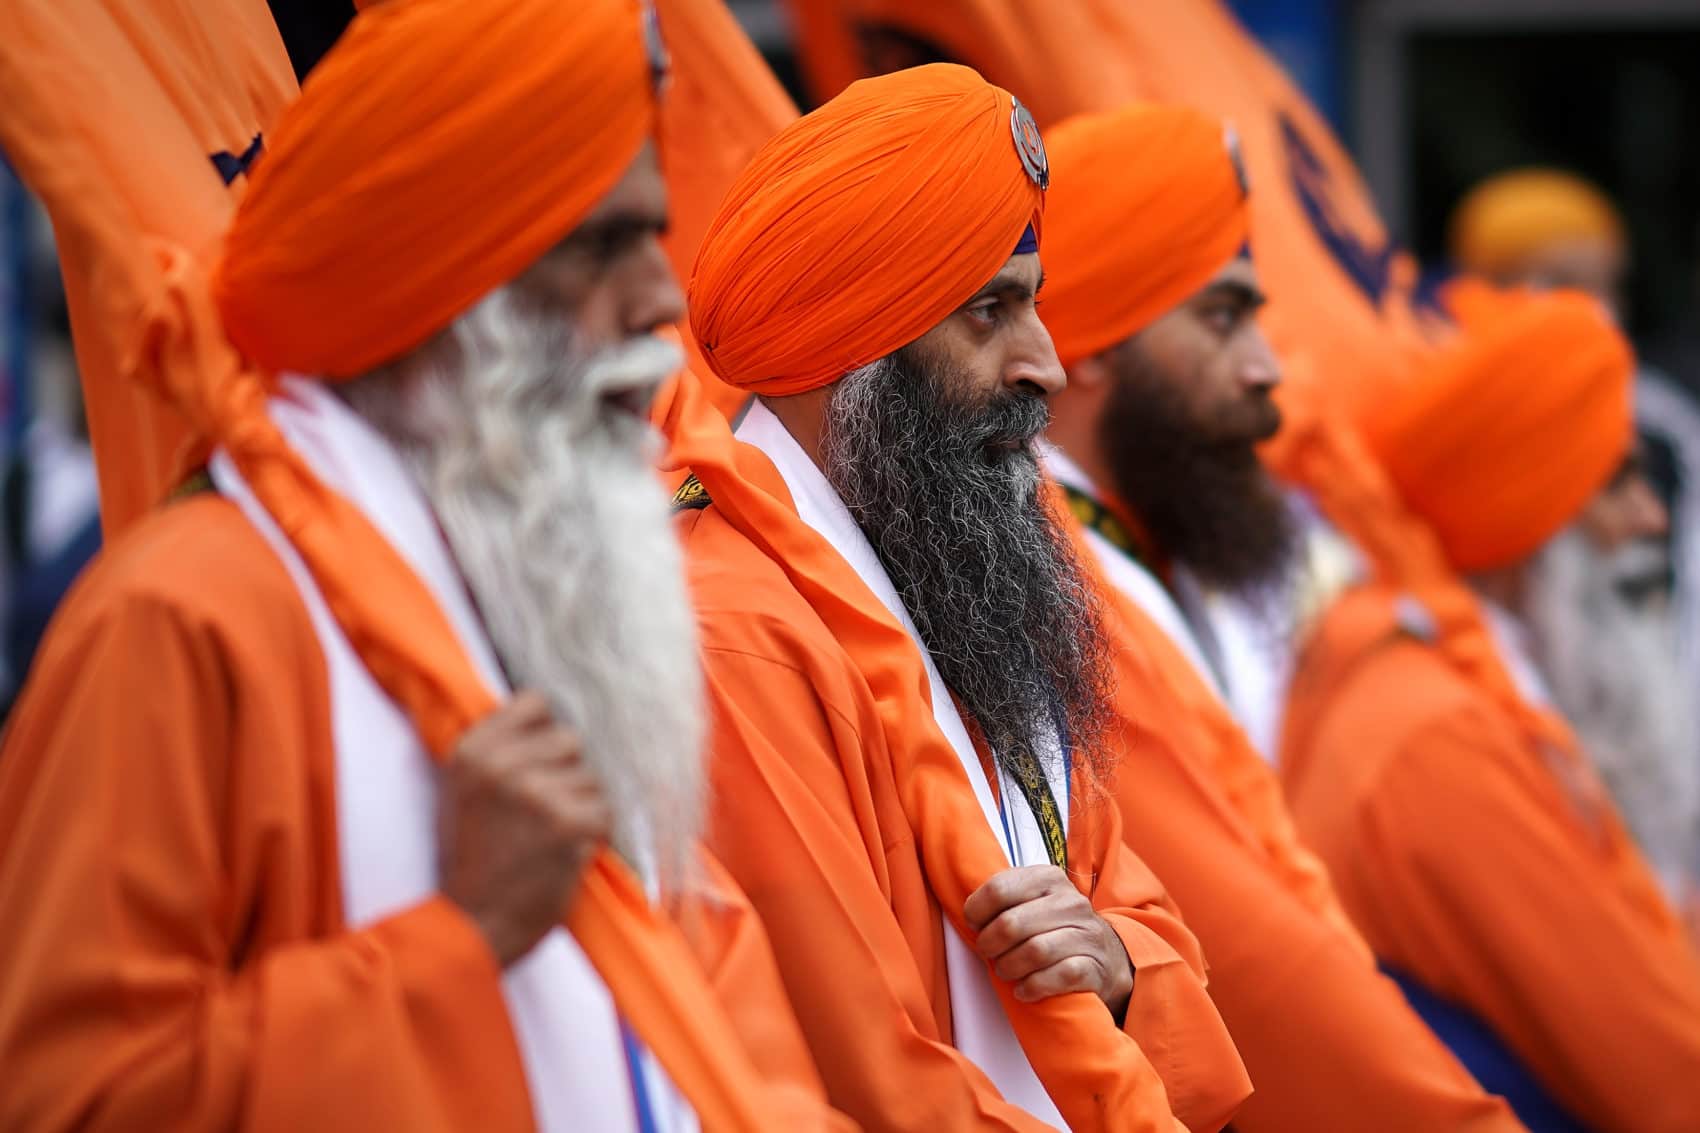 Vài nét về giáo lý và đặc điểm tín đồ đạo Sikh ở Ấn Độ